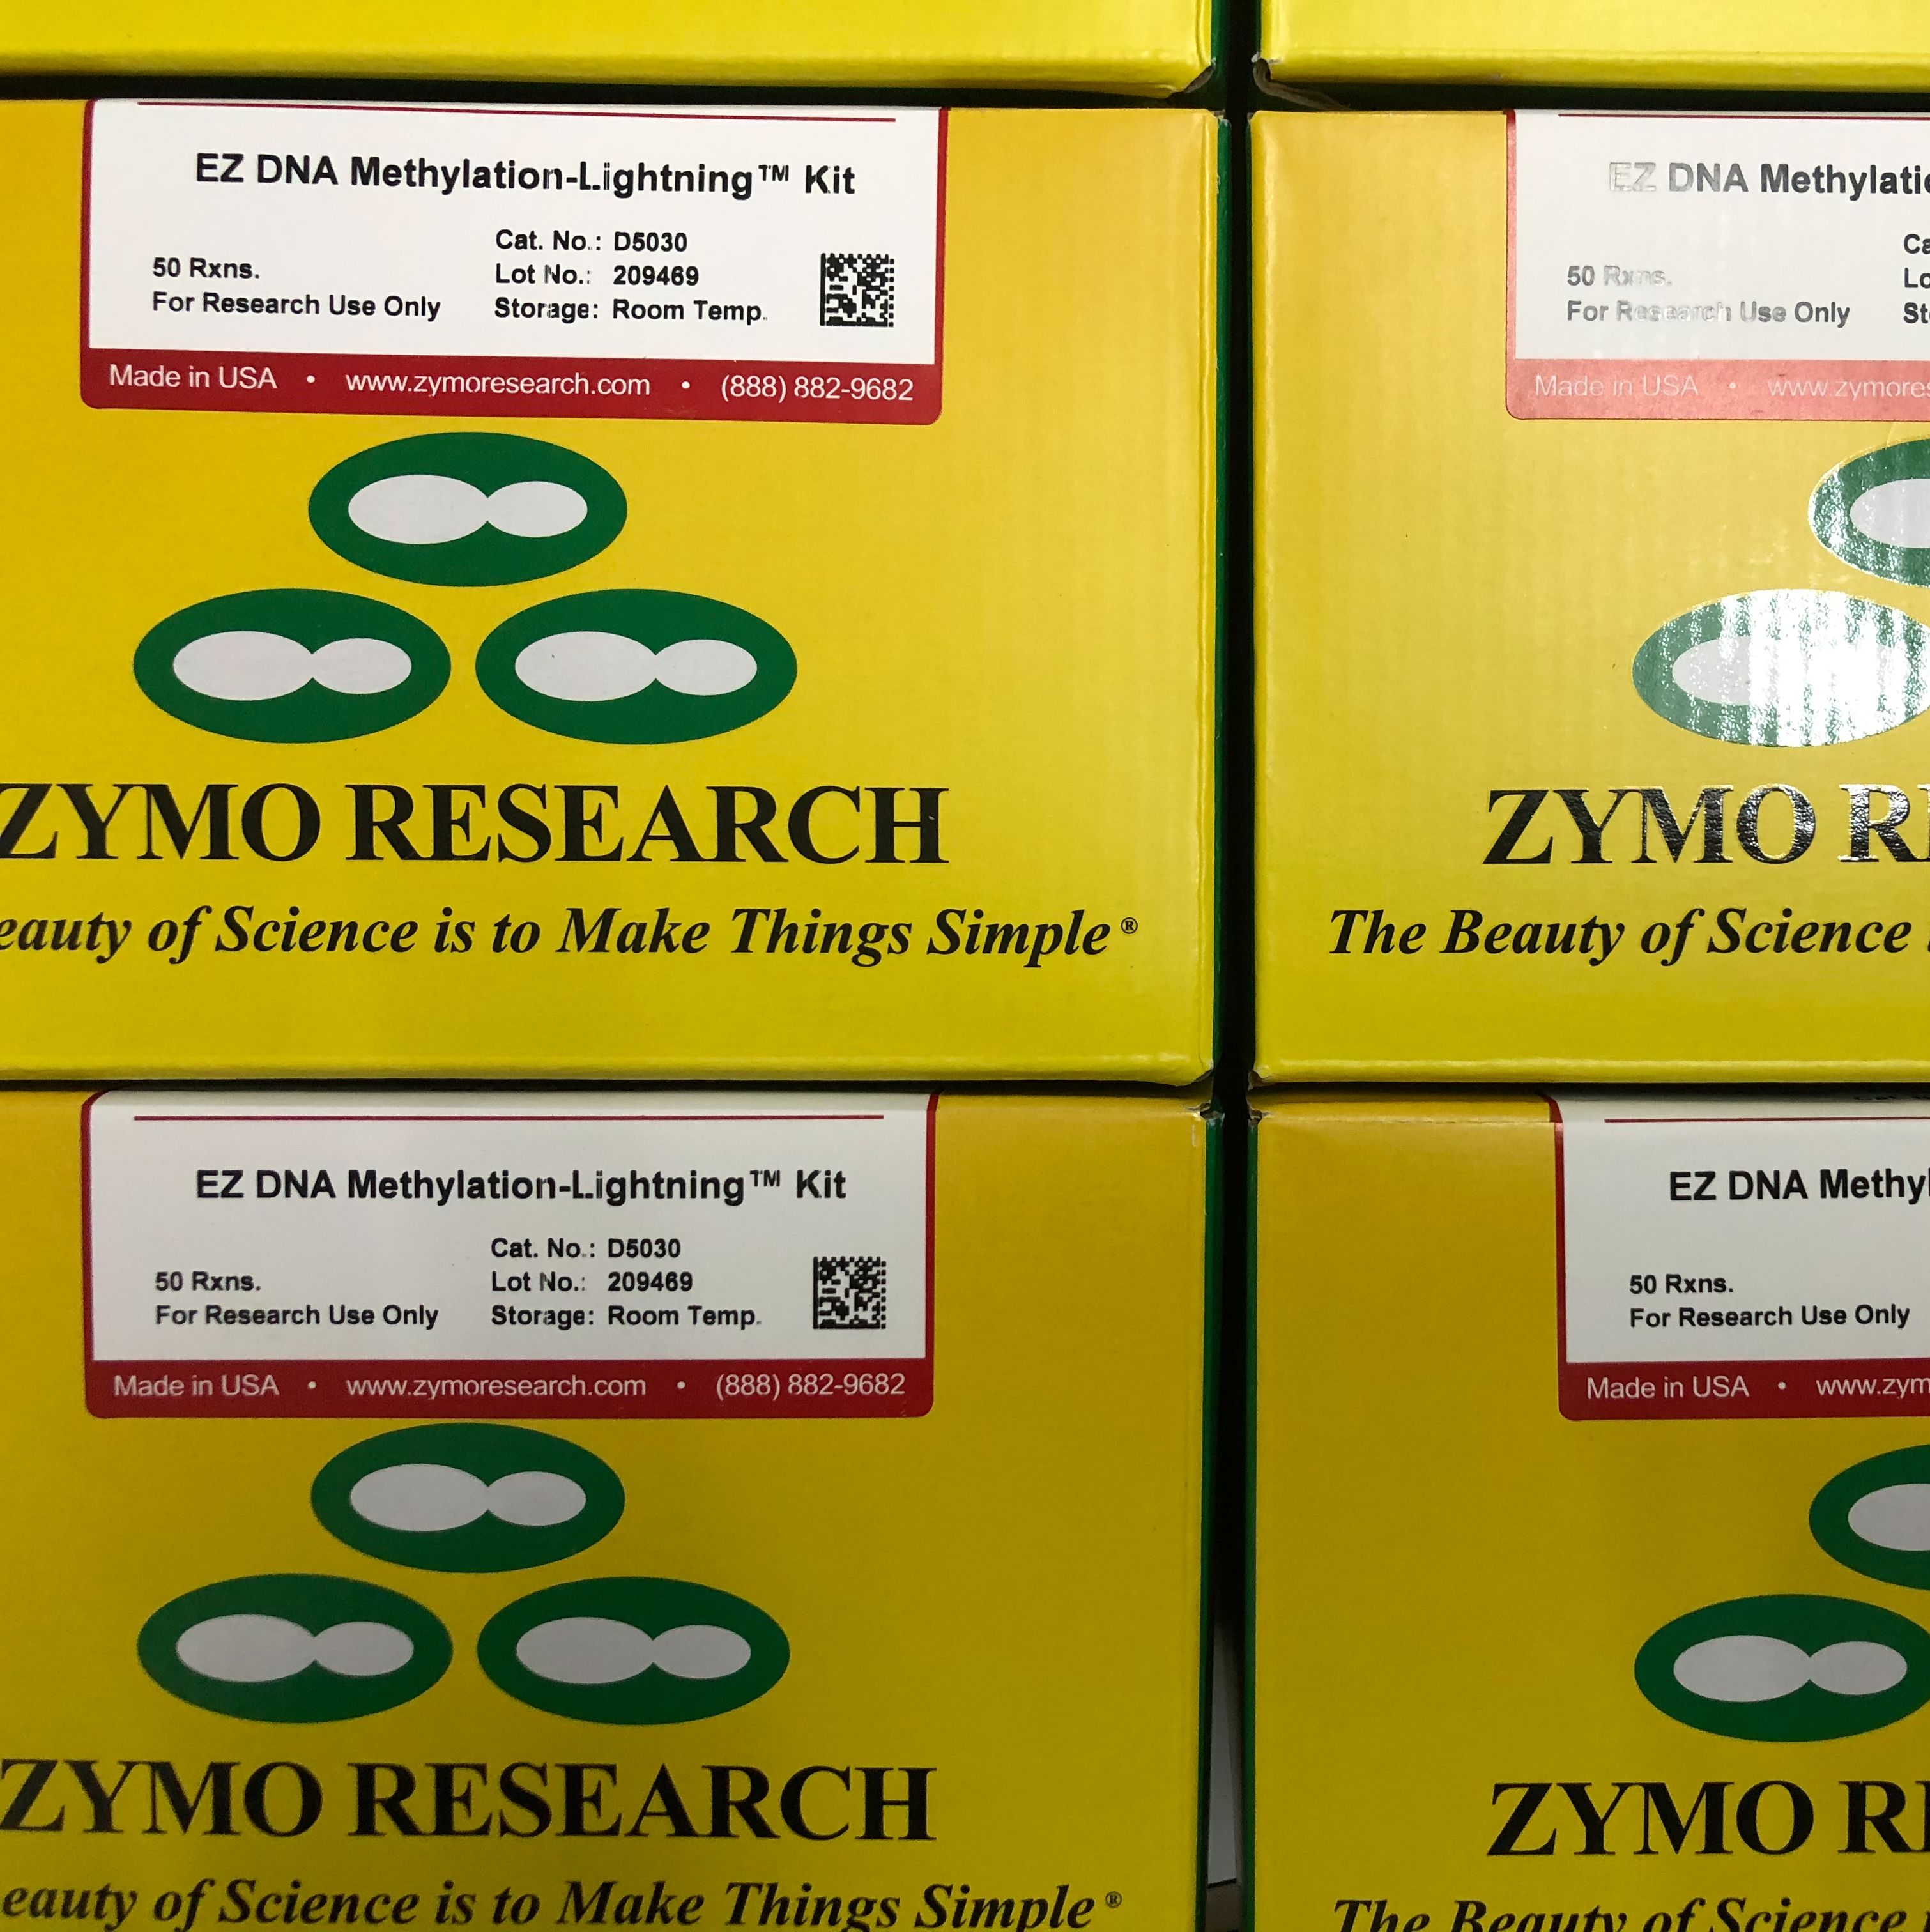 现货Zymo Research货号D5030上海睿安生物EZ DNA Methy-lation-Lightning Kit询订13611631389